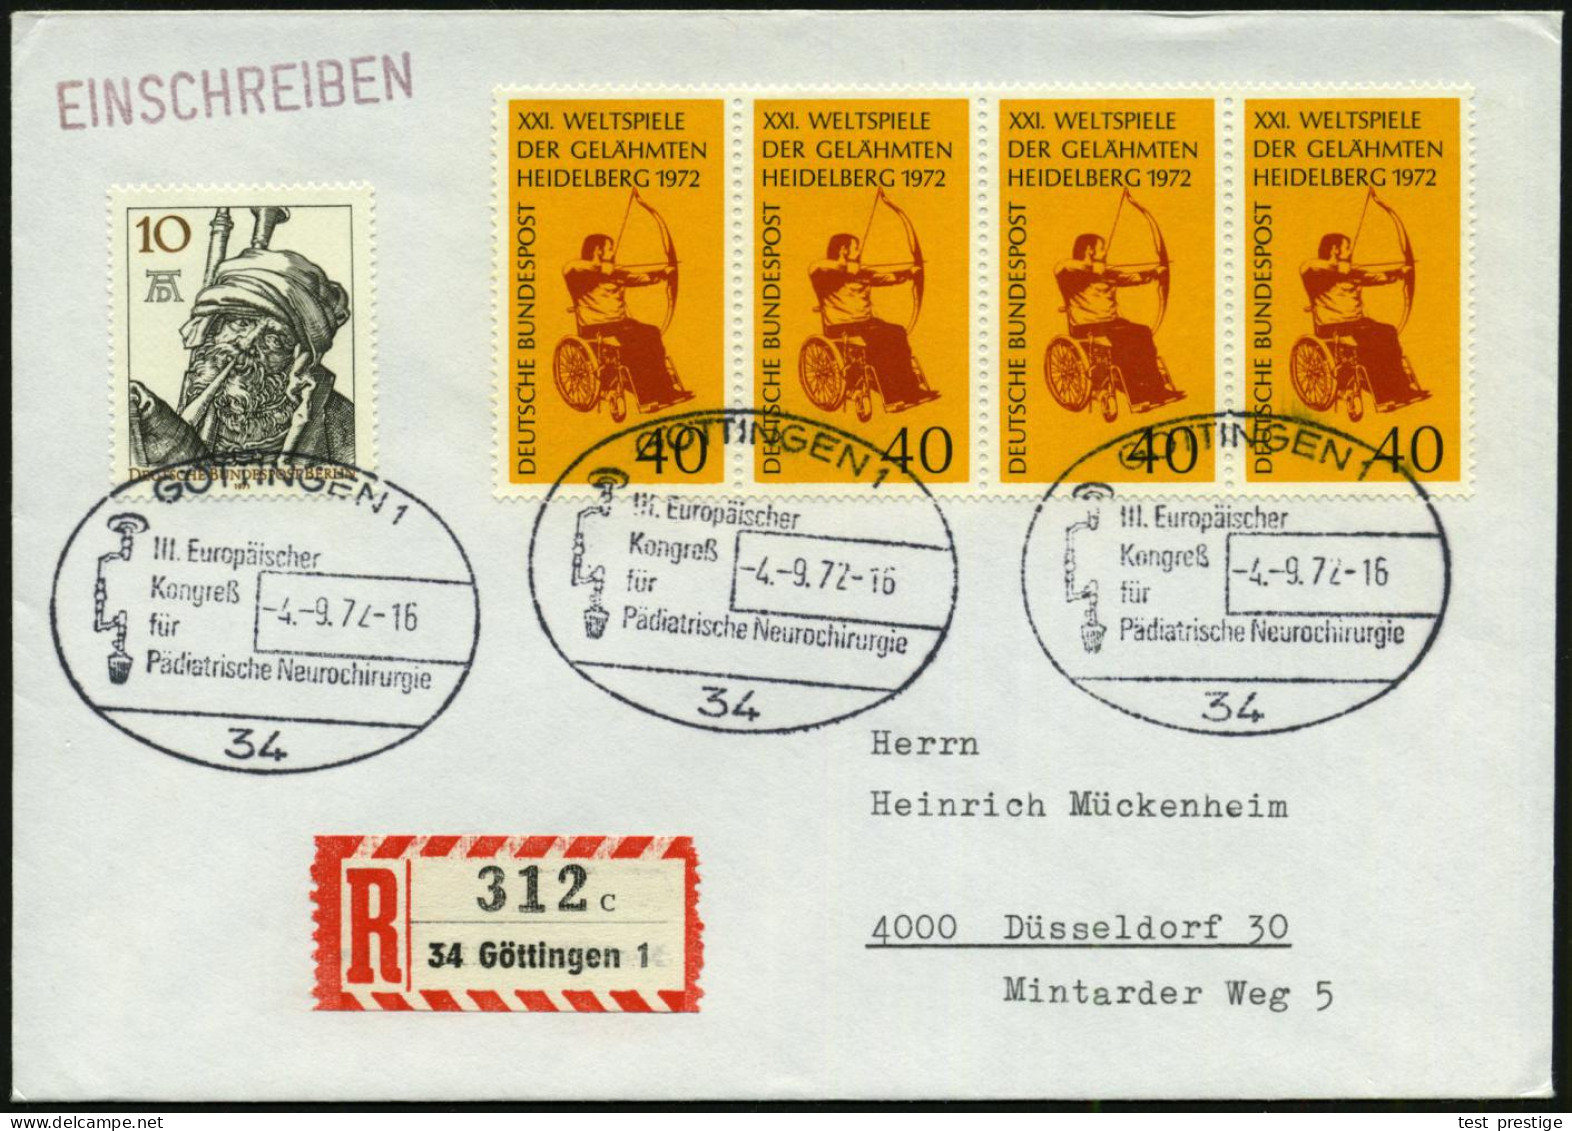 34 GÖTTINGEN 1/ III.Europ./ Kongreß/ Für/ Pädiatrische Neurochirurgie 1972 (4.9.) SSt = Trepan (= Schädel-bohrer) 3x + R - Enfermedades